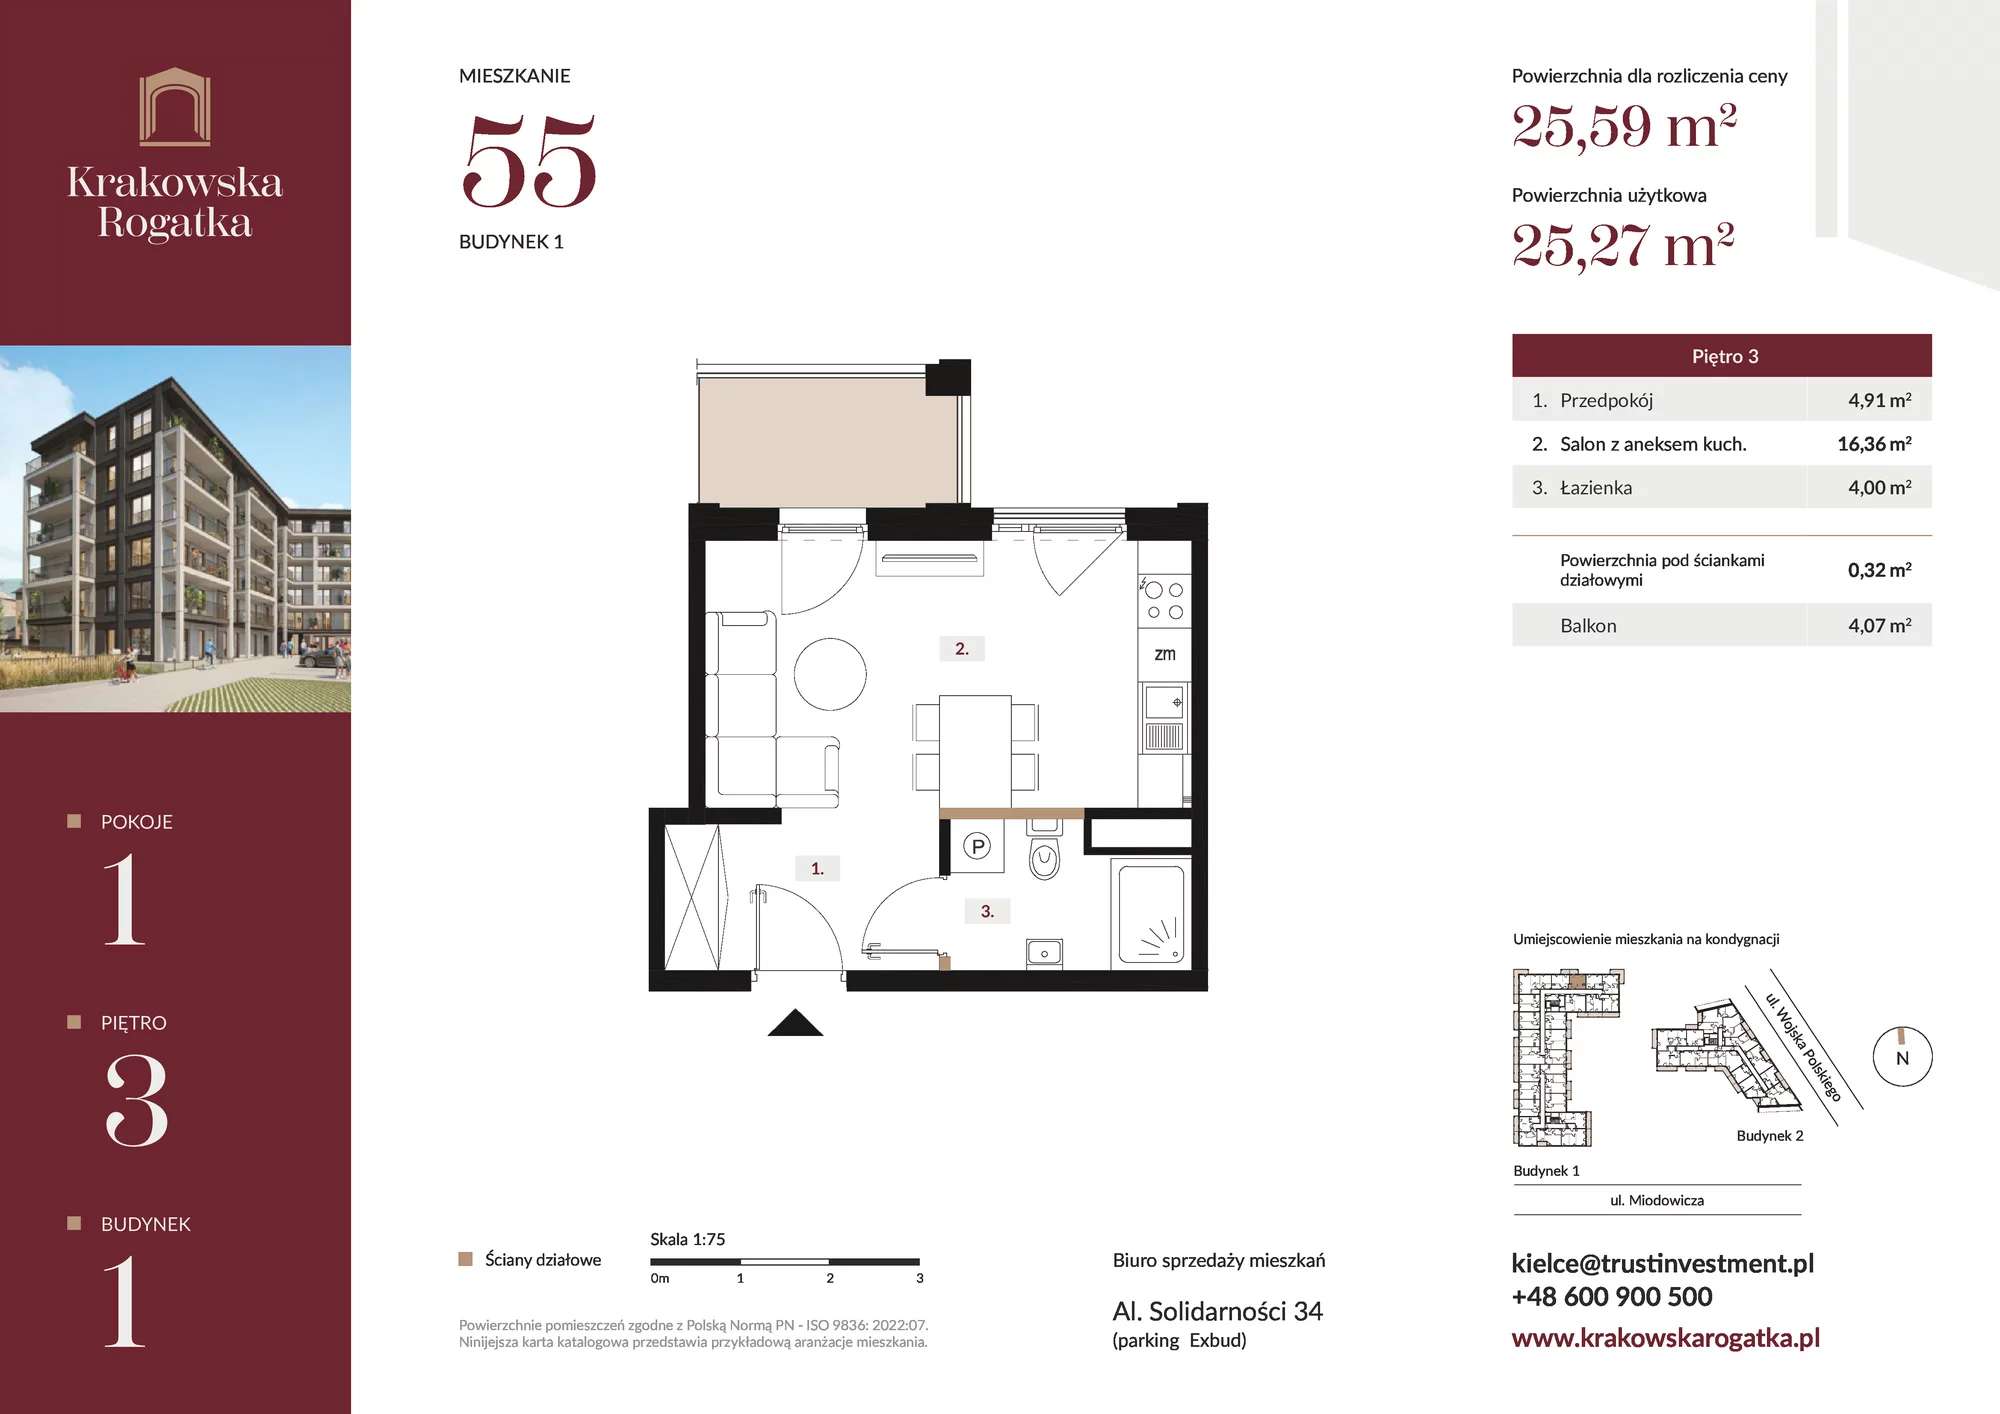 Mieszkanie 25,59 m², piętro 3, oferta nr Budynek 1 Mieszkanie 55, Krakowska Rogatka, Kielce, ul. Miodowicza 1